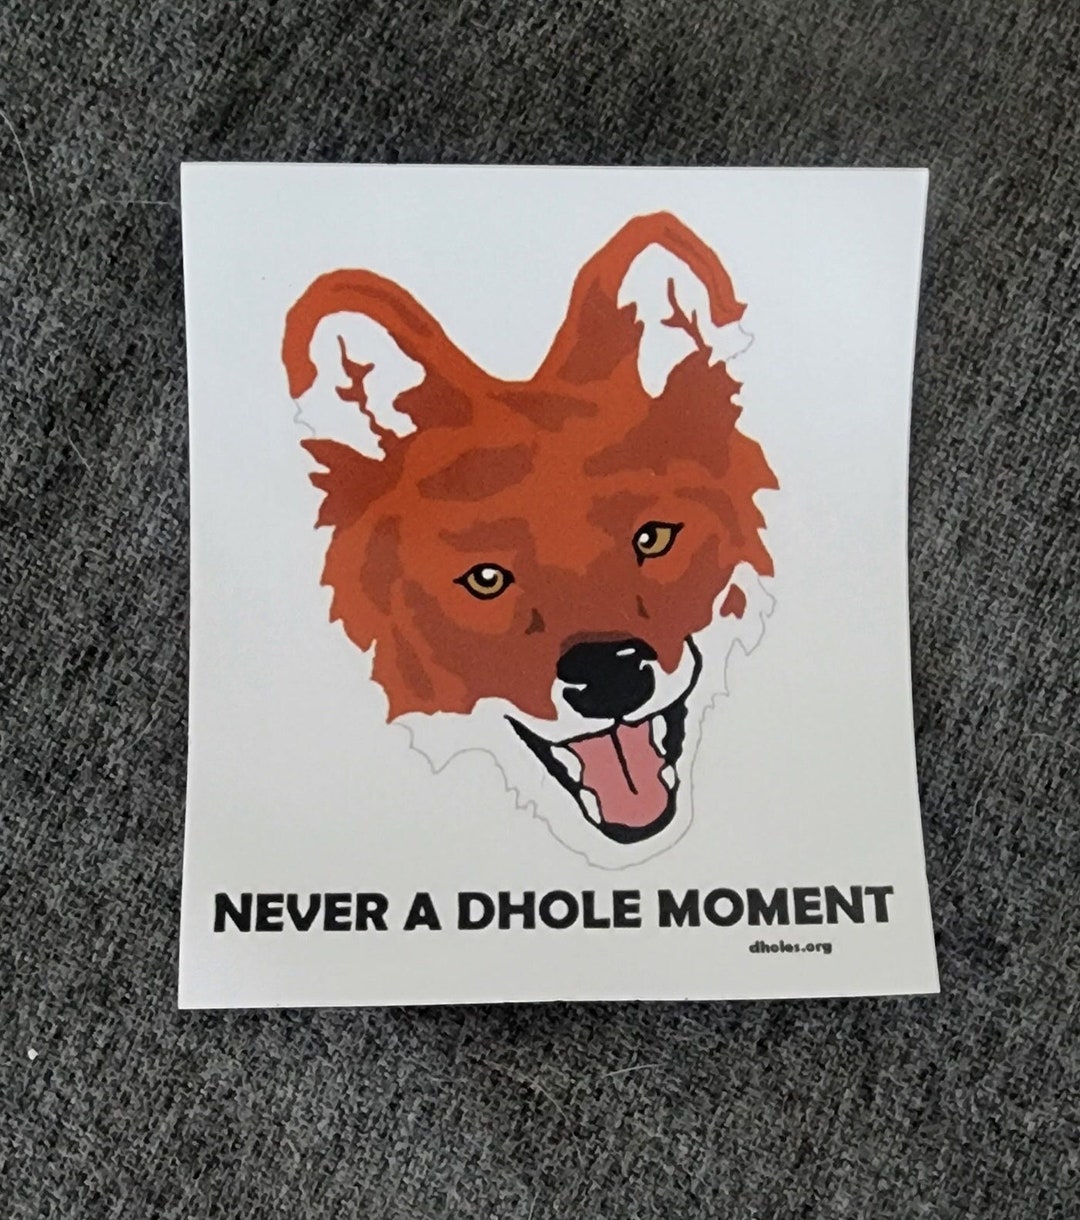 Canine/feline Sticker Sheets 